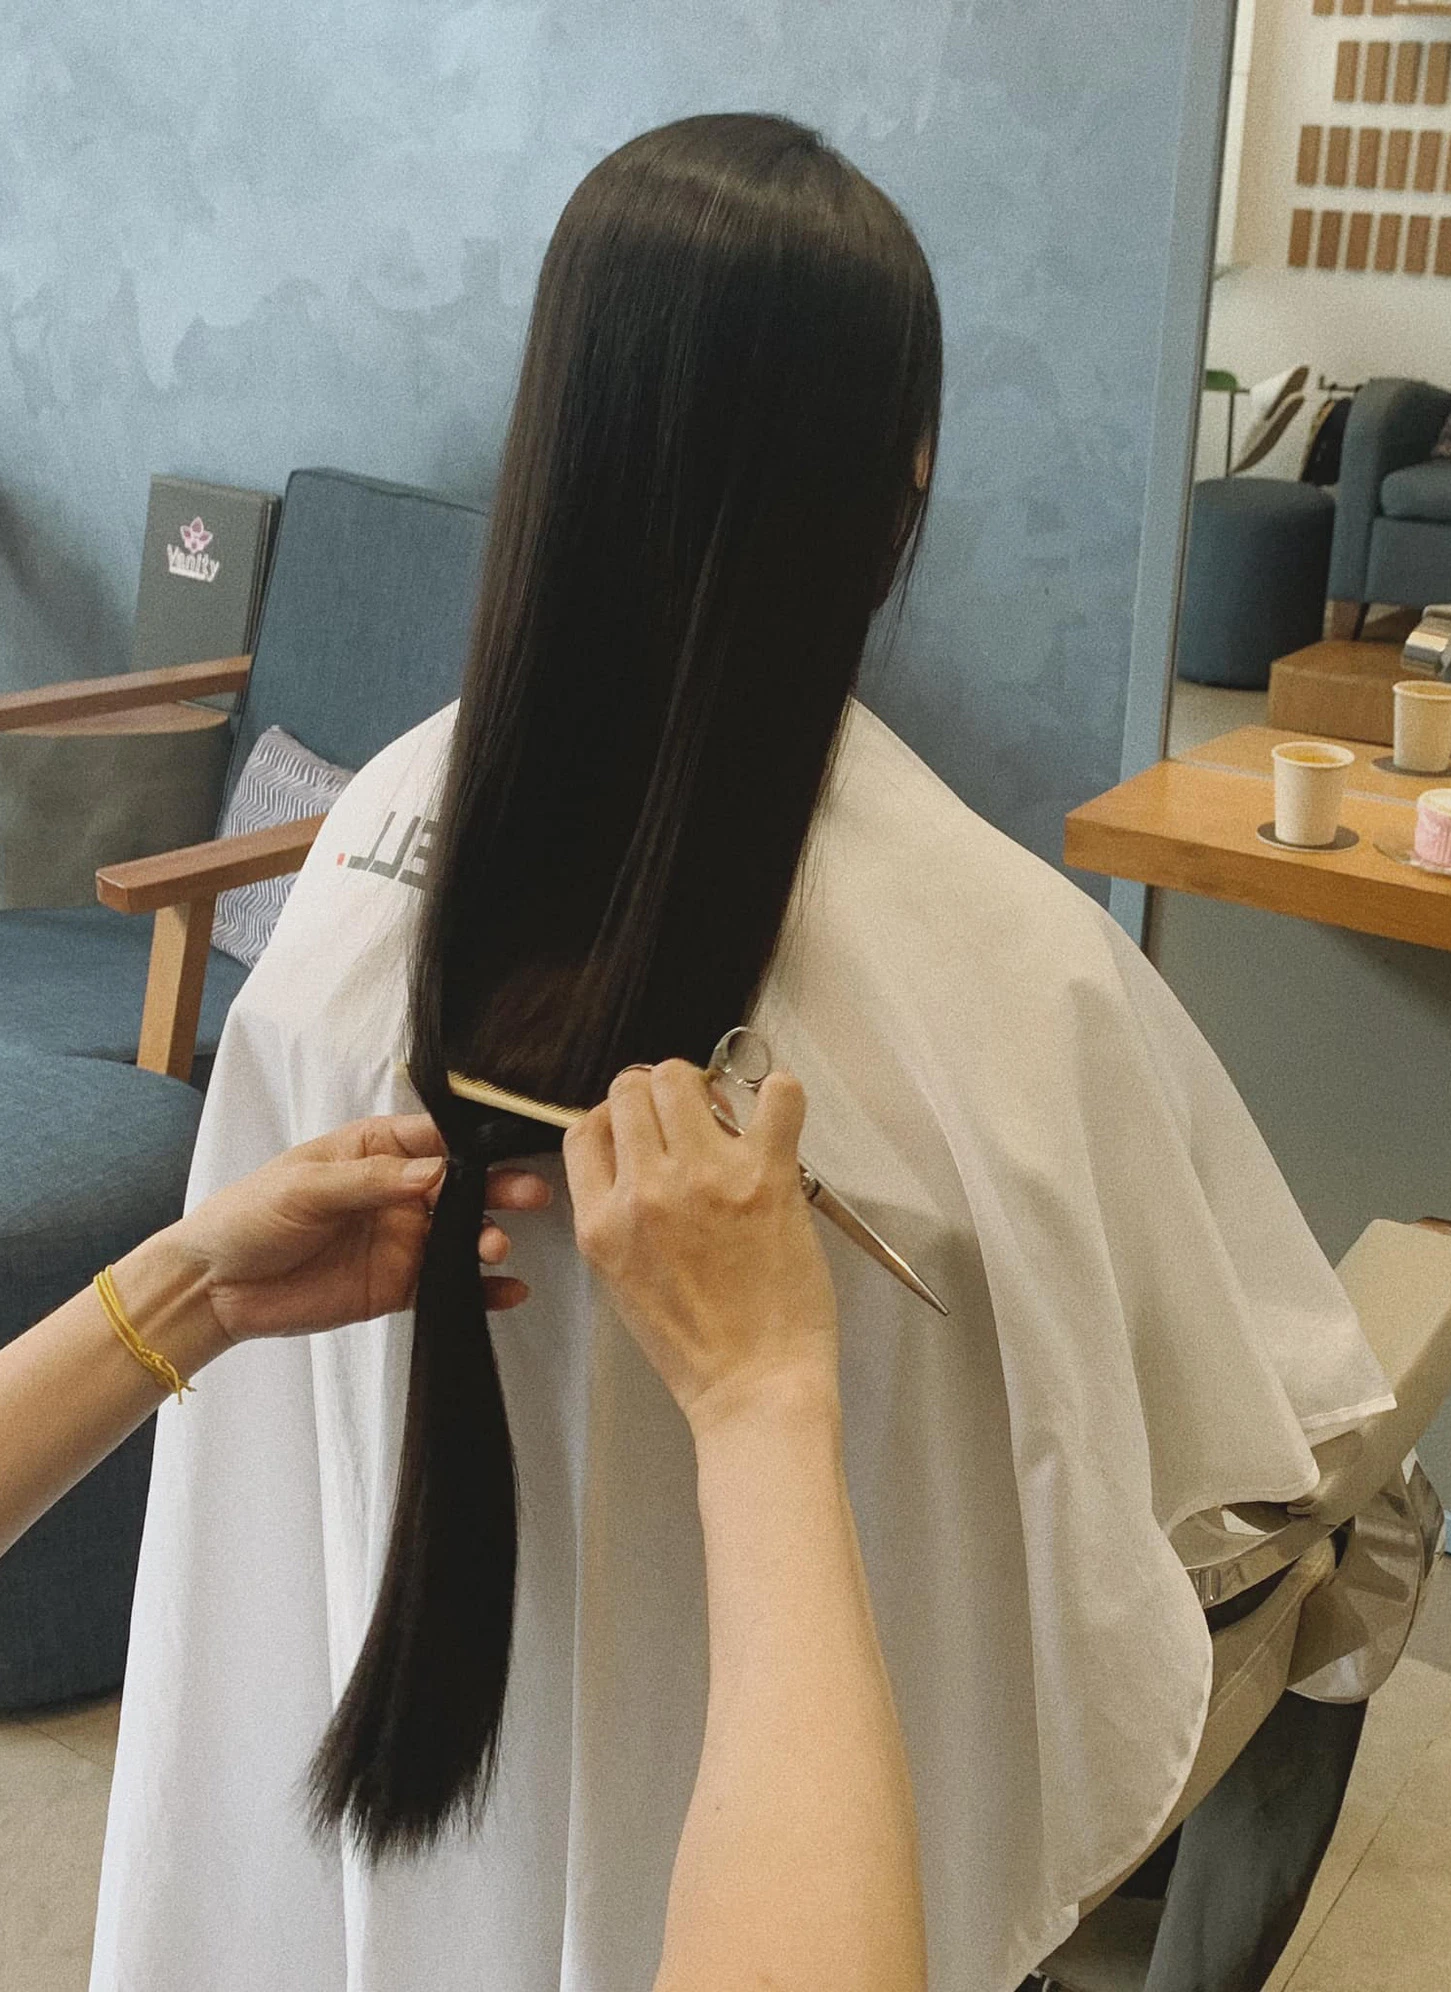 Tóc của Helly sẽ được làm thành tóc giả để trao tặng cho những người bệnh ung thư. Đây thật sự là một hành động vô cùng ý nghĩa của nàng thơ làng thời trang Việt.